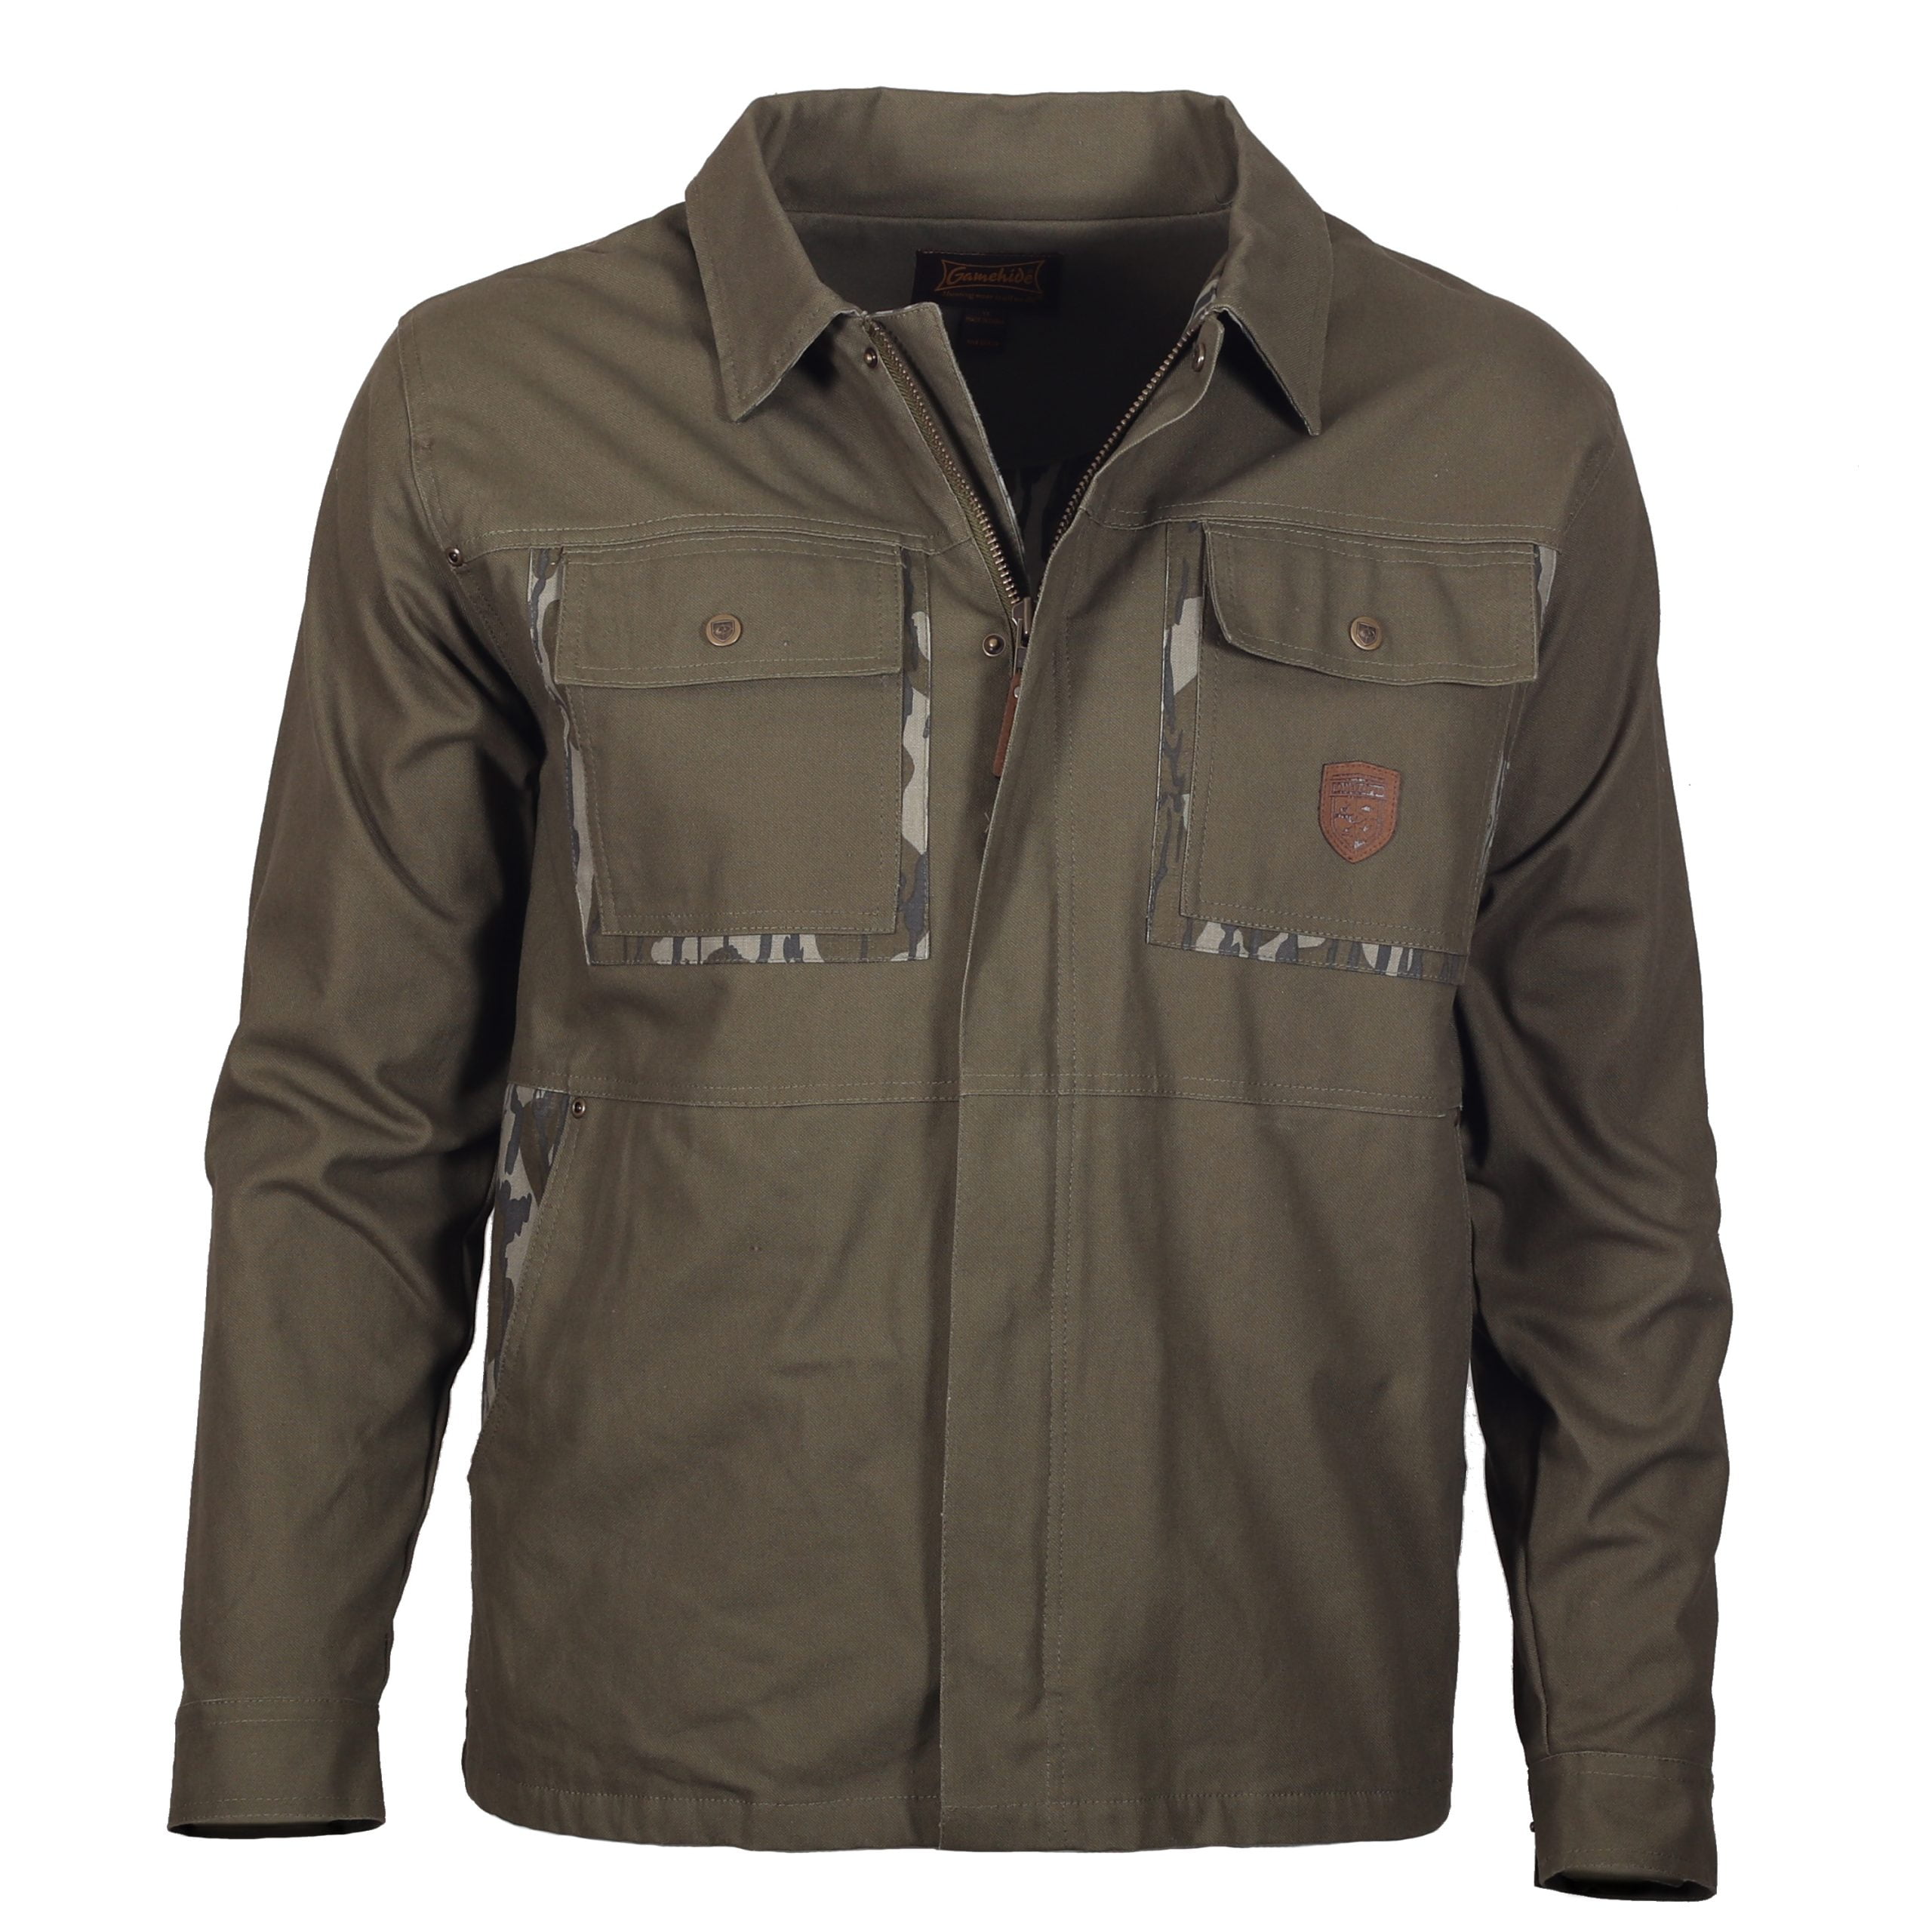 Mossy Oak Gamekeeper Jacket Field Coat Fleece Lined - 2X - Walmart.com